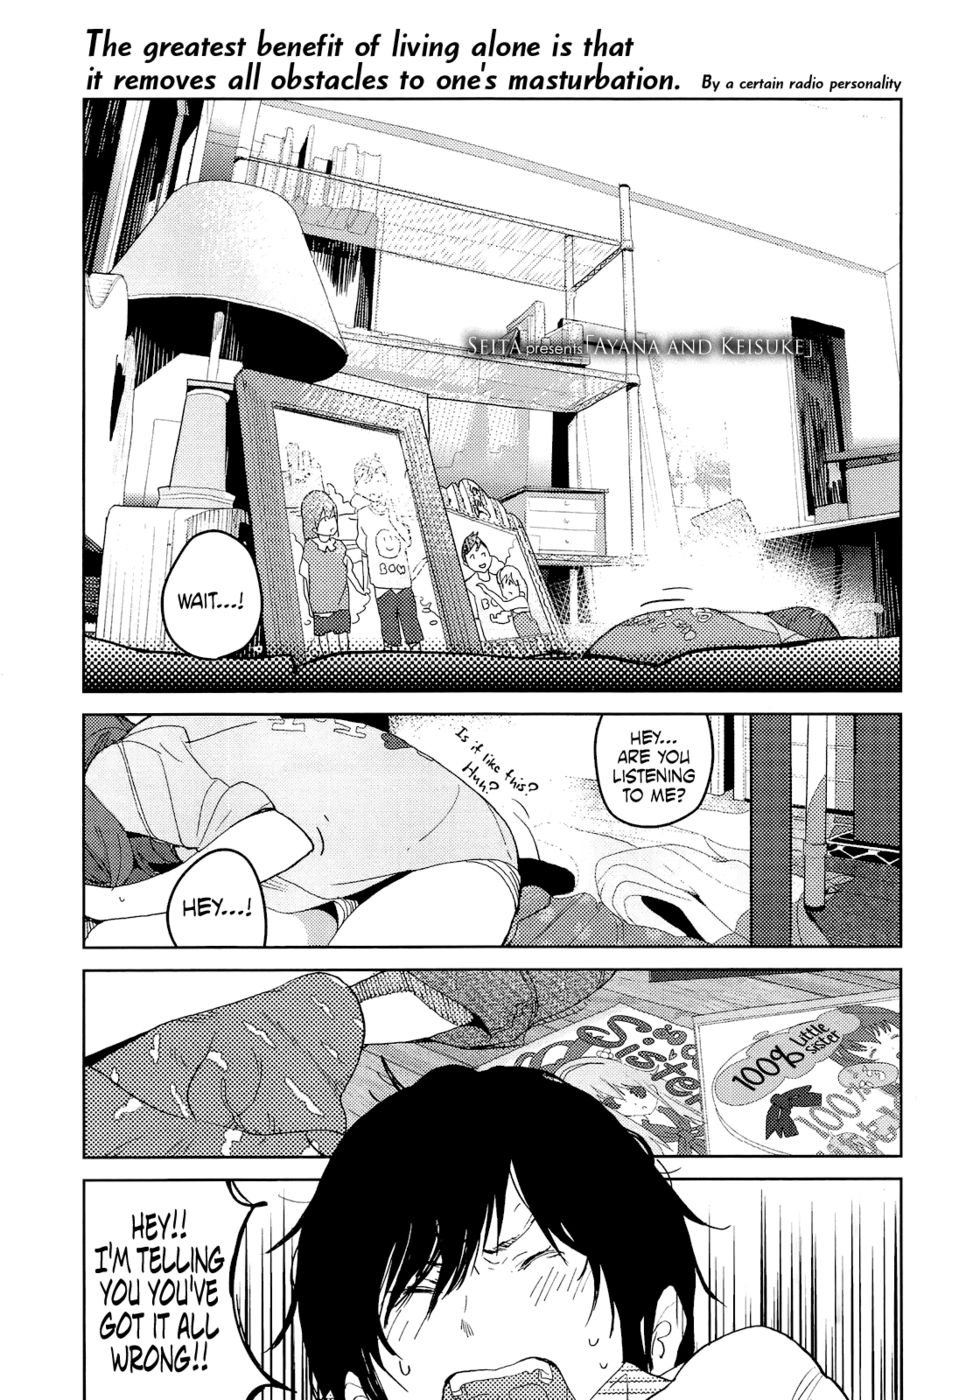 Hentai Manga Comic-Ayana And Keisuke-Read-1